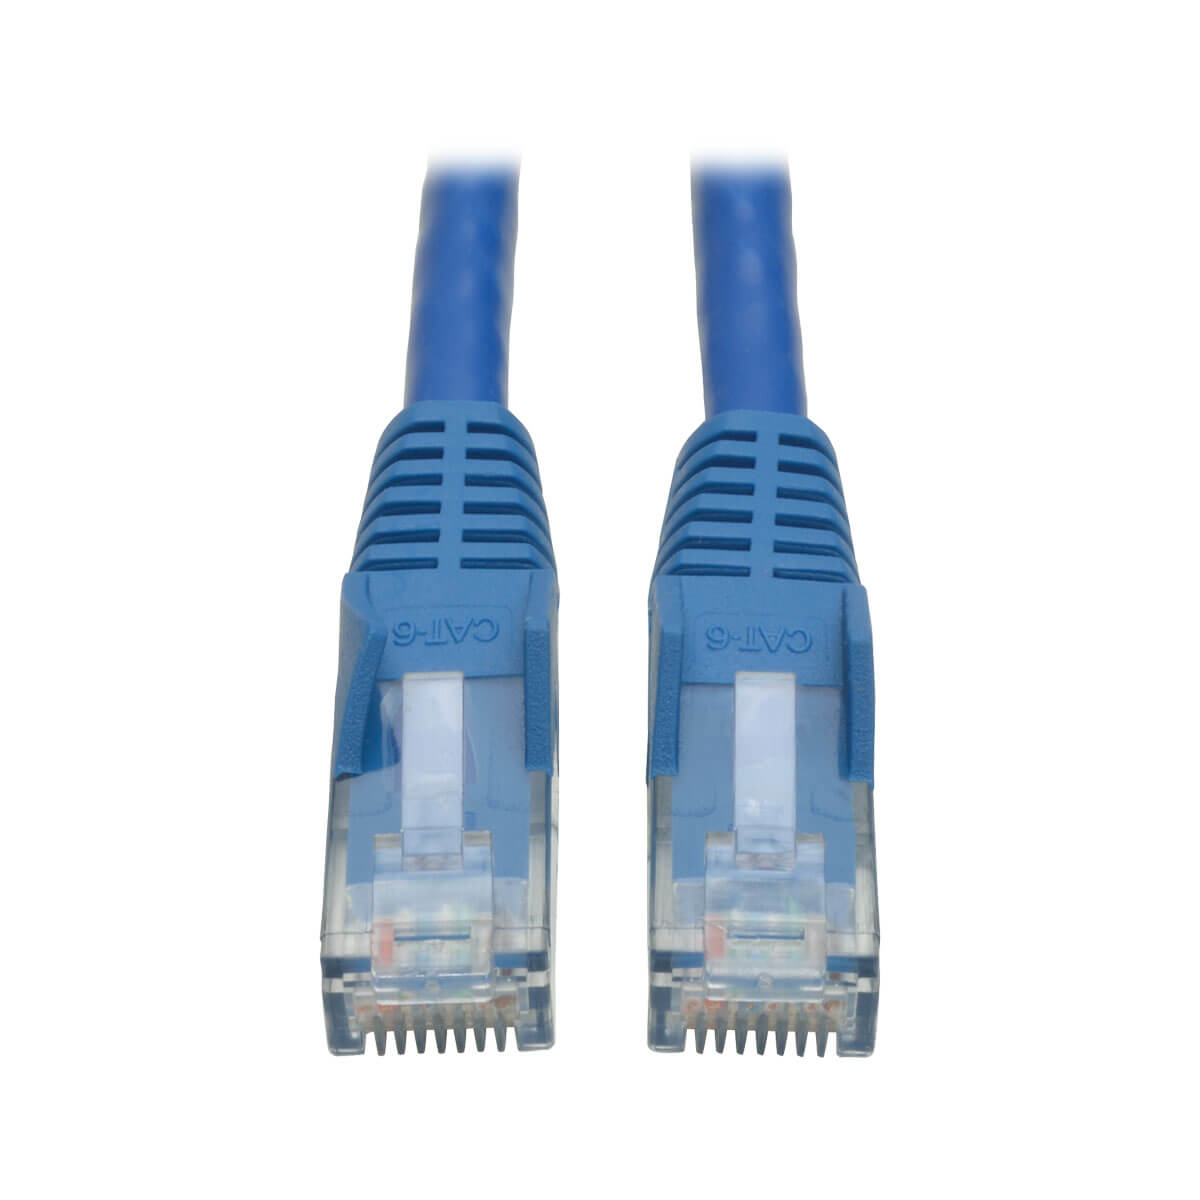 Cable Patch Tripp Lite Cat6 Utp Rj45 M/M Azul 1.52M N201-005-Bl